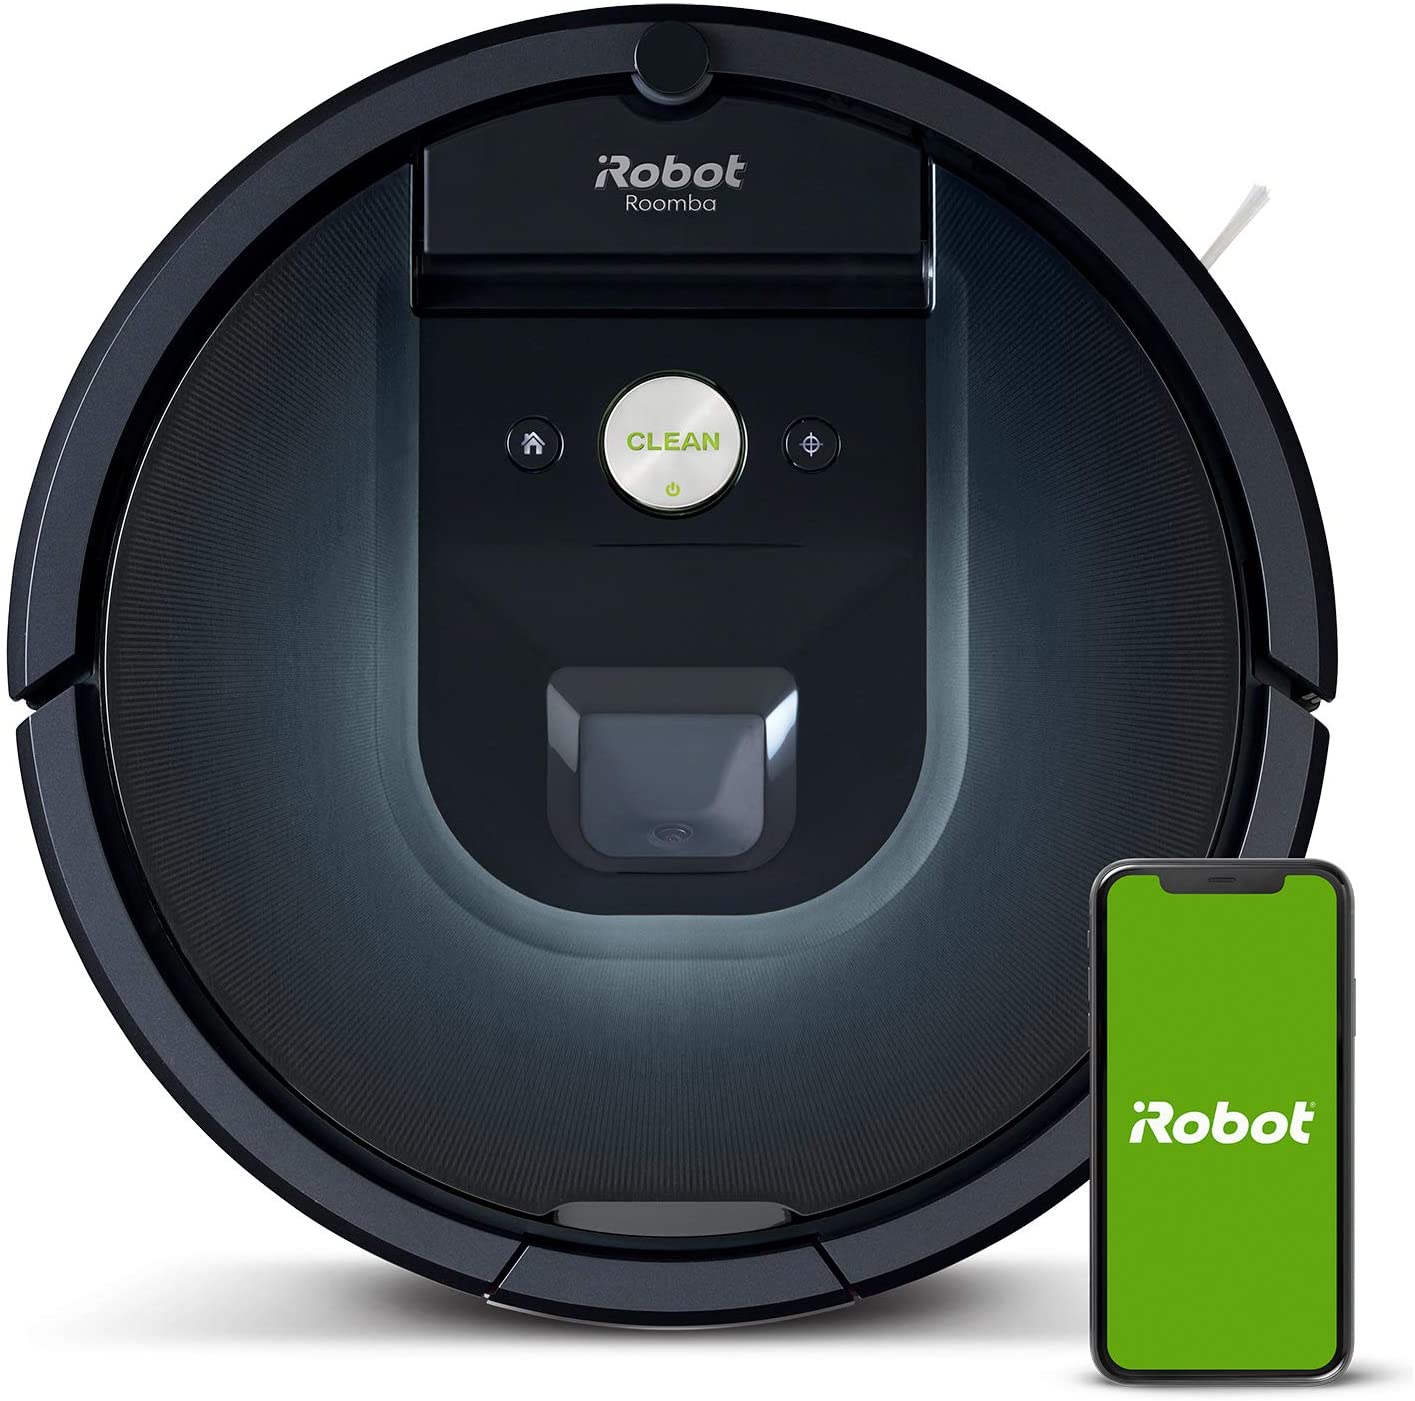 Roomba 981 (980) vs Roomba 960